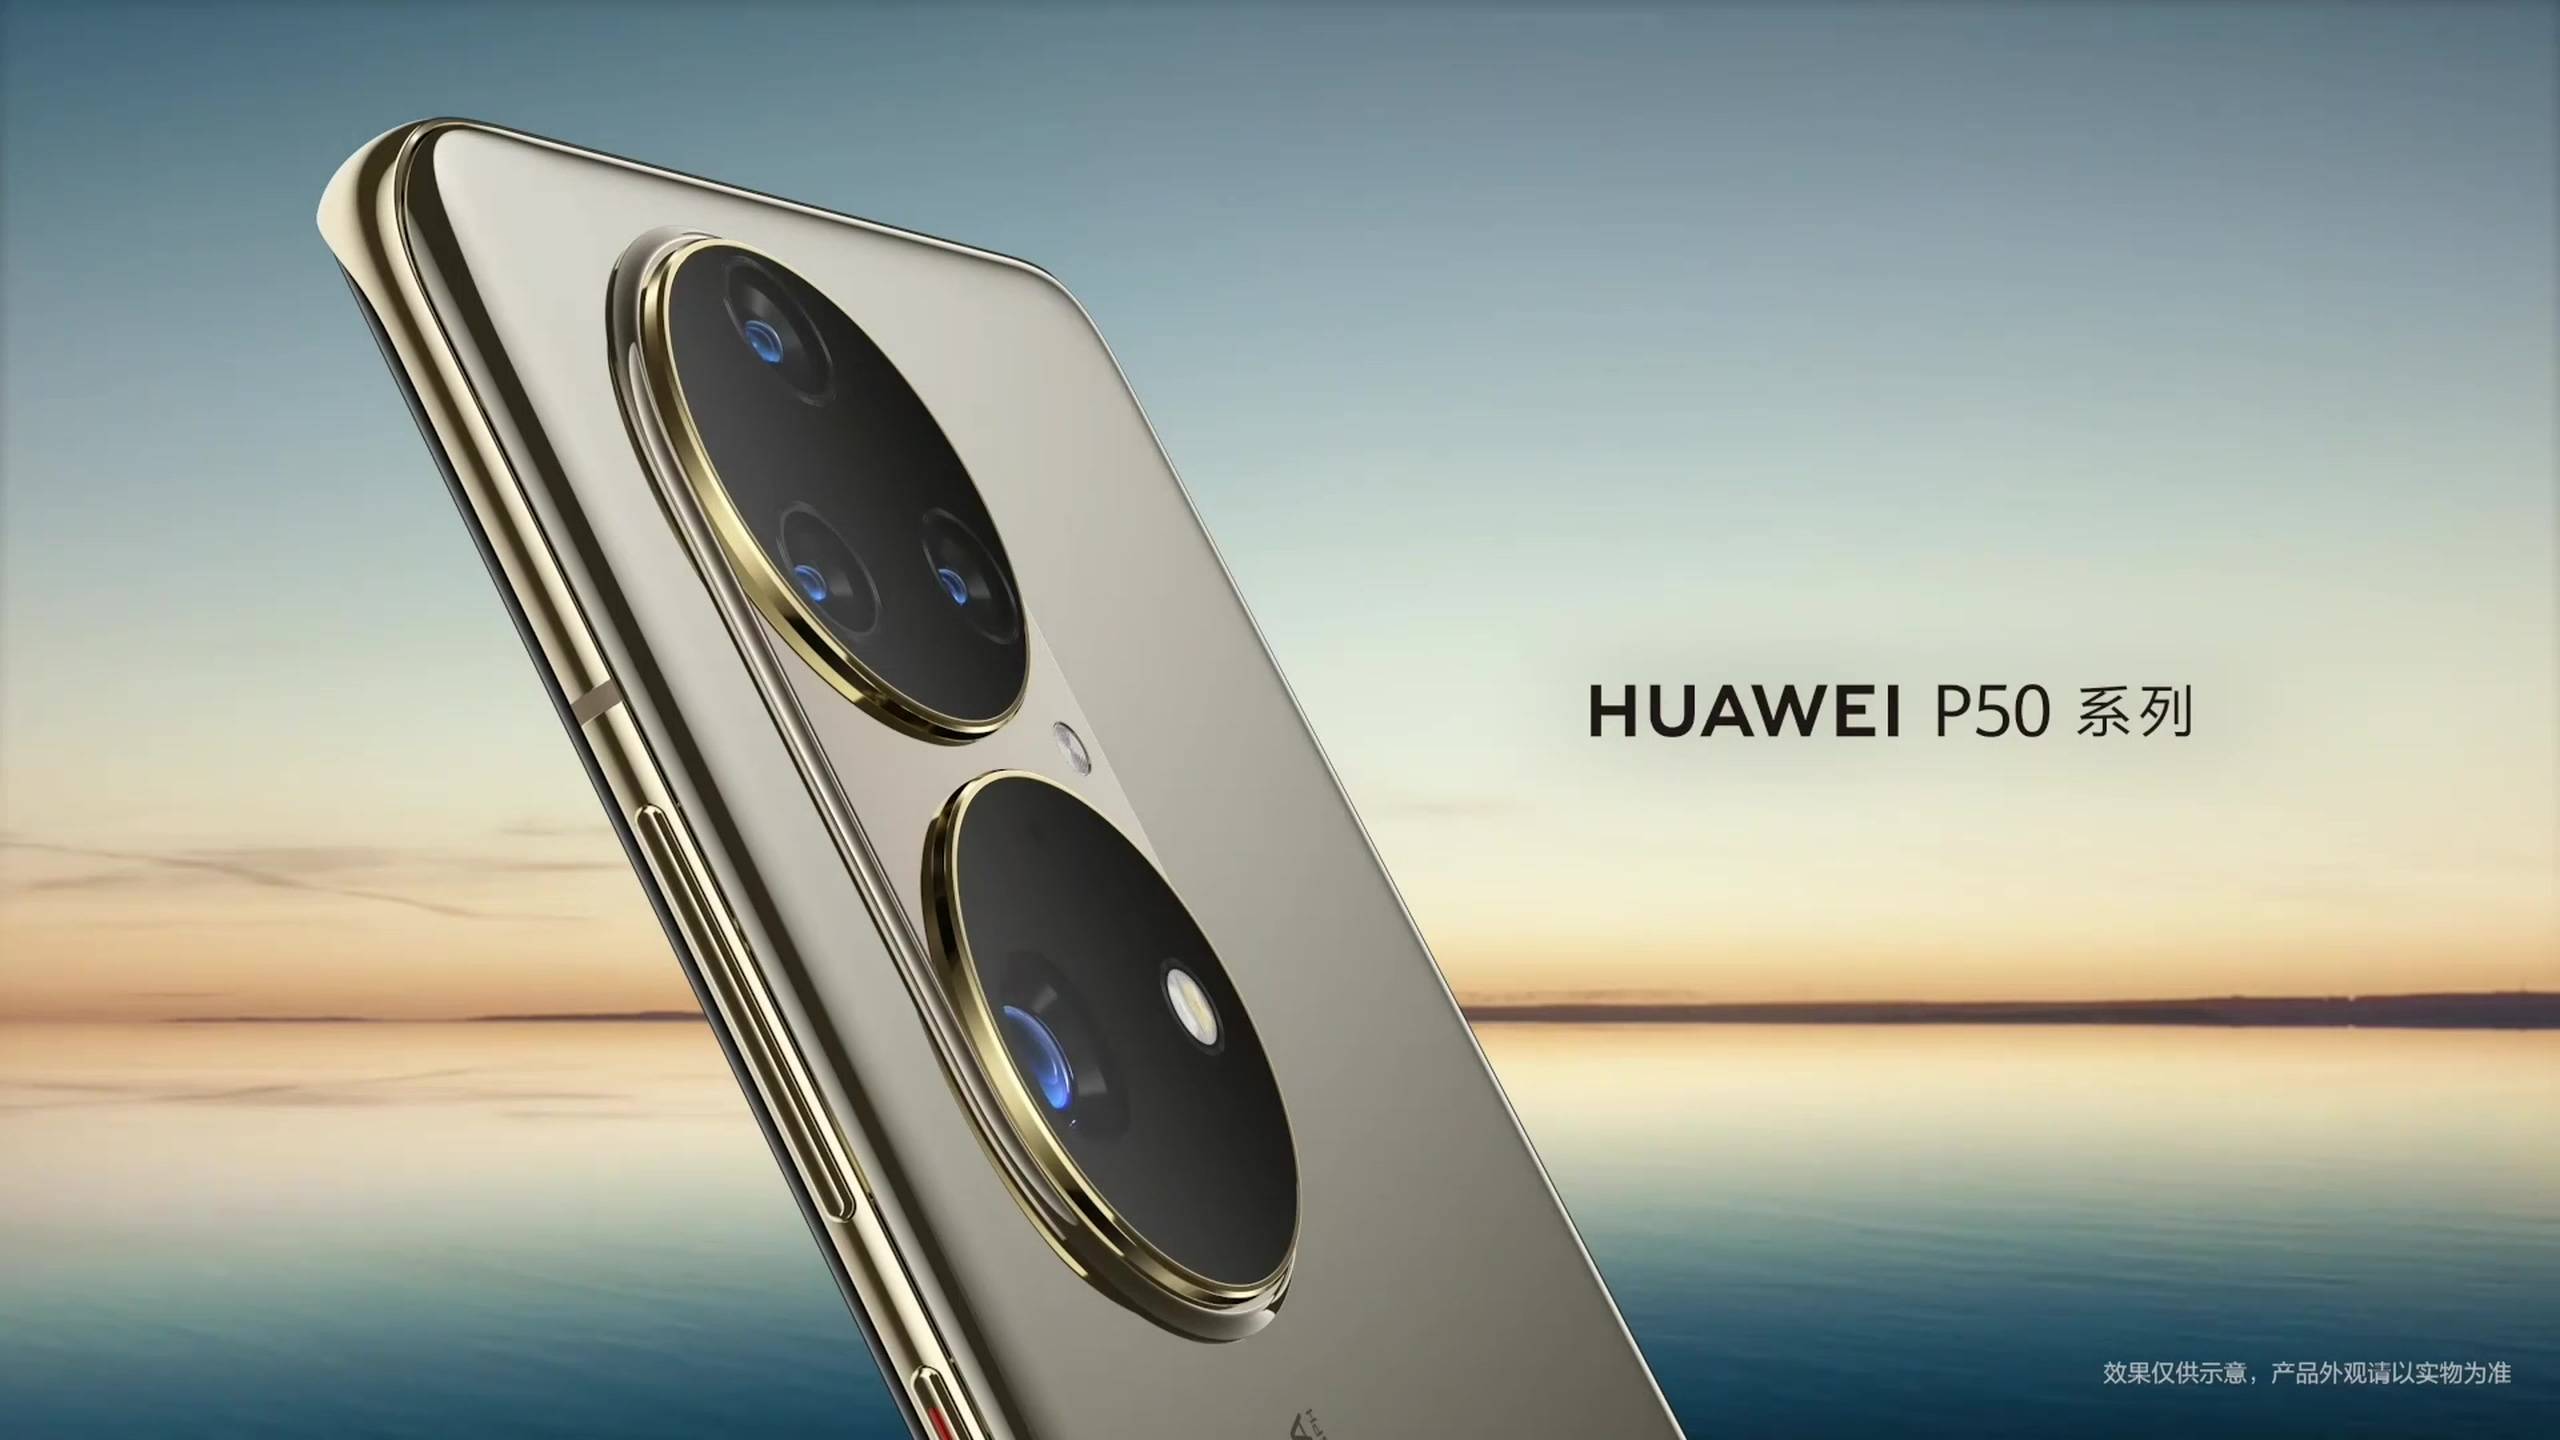 live 480836706 78290975.flv 20210729 160743.831 - Sintesi della conferenza Huawei P50: a partire da 4488 yuan! Chip Kirin e Snapdragon opzionali, le prestazioni dell’immagine soddisfano l’appetito